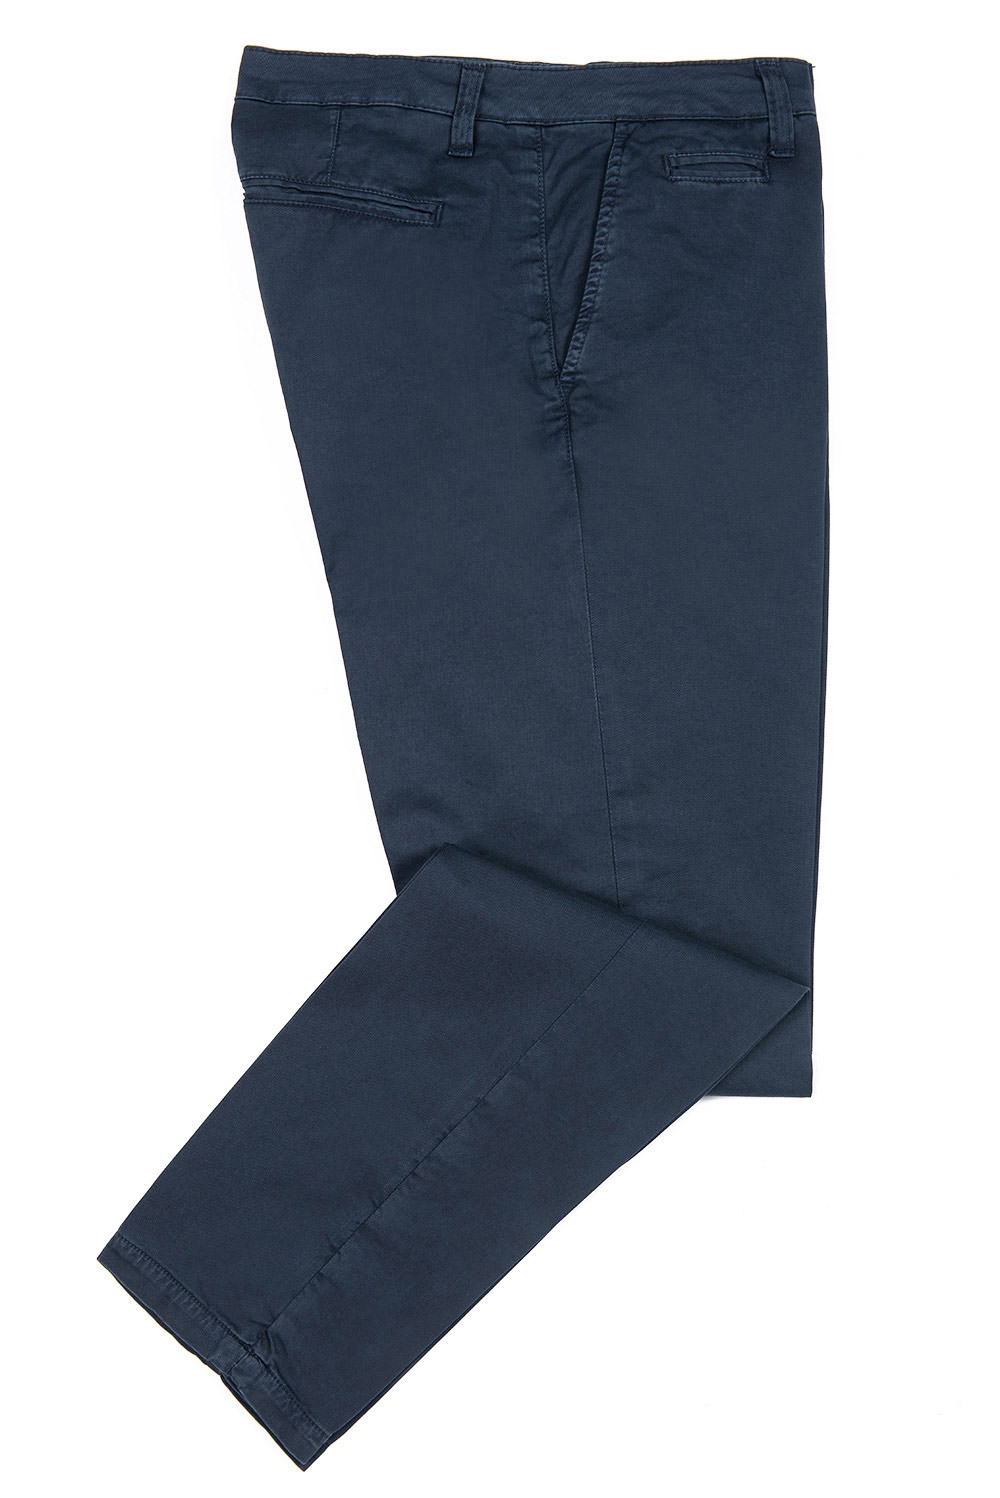 Pantaloni bleumarin uni 1